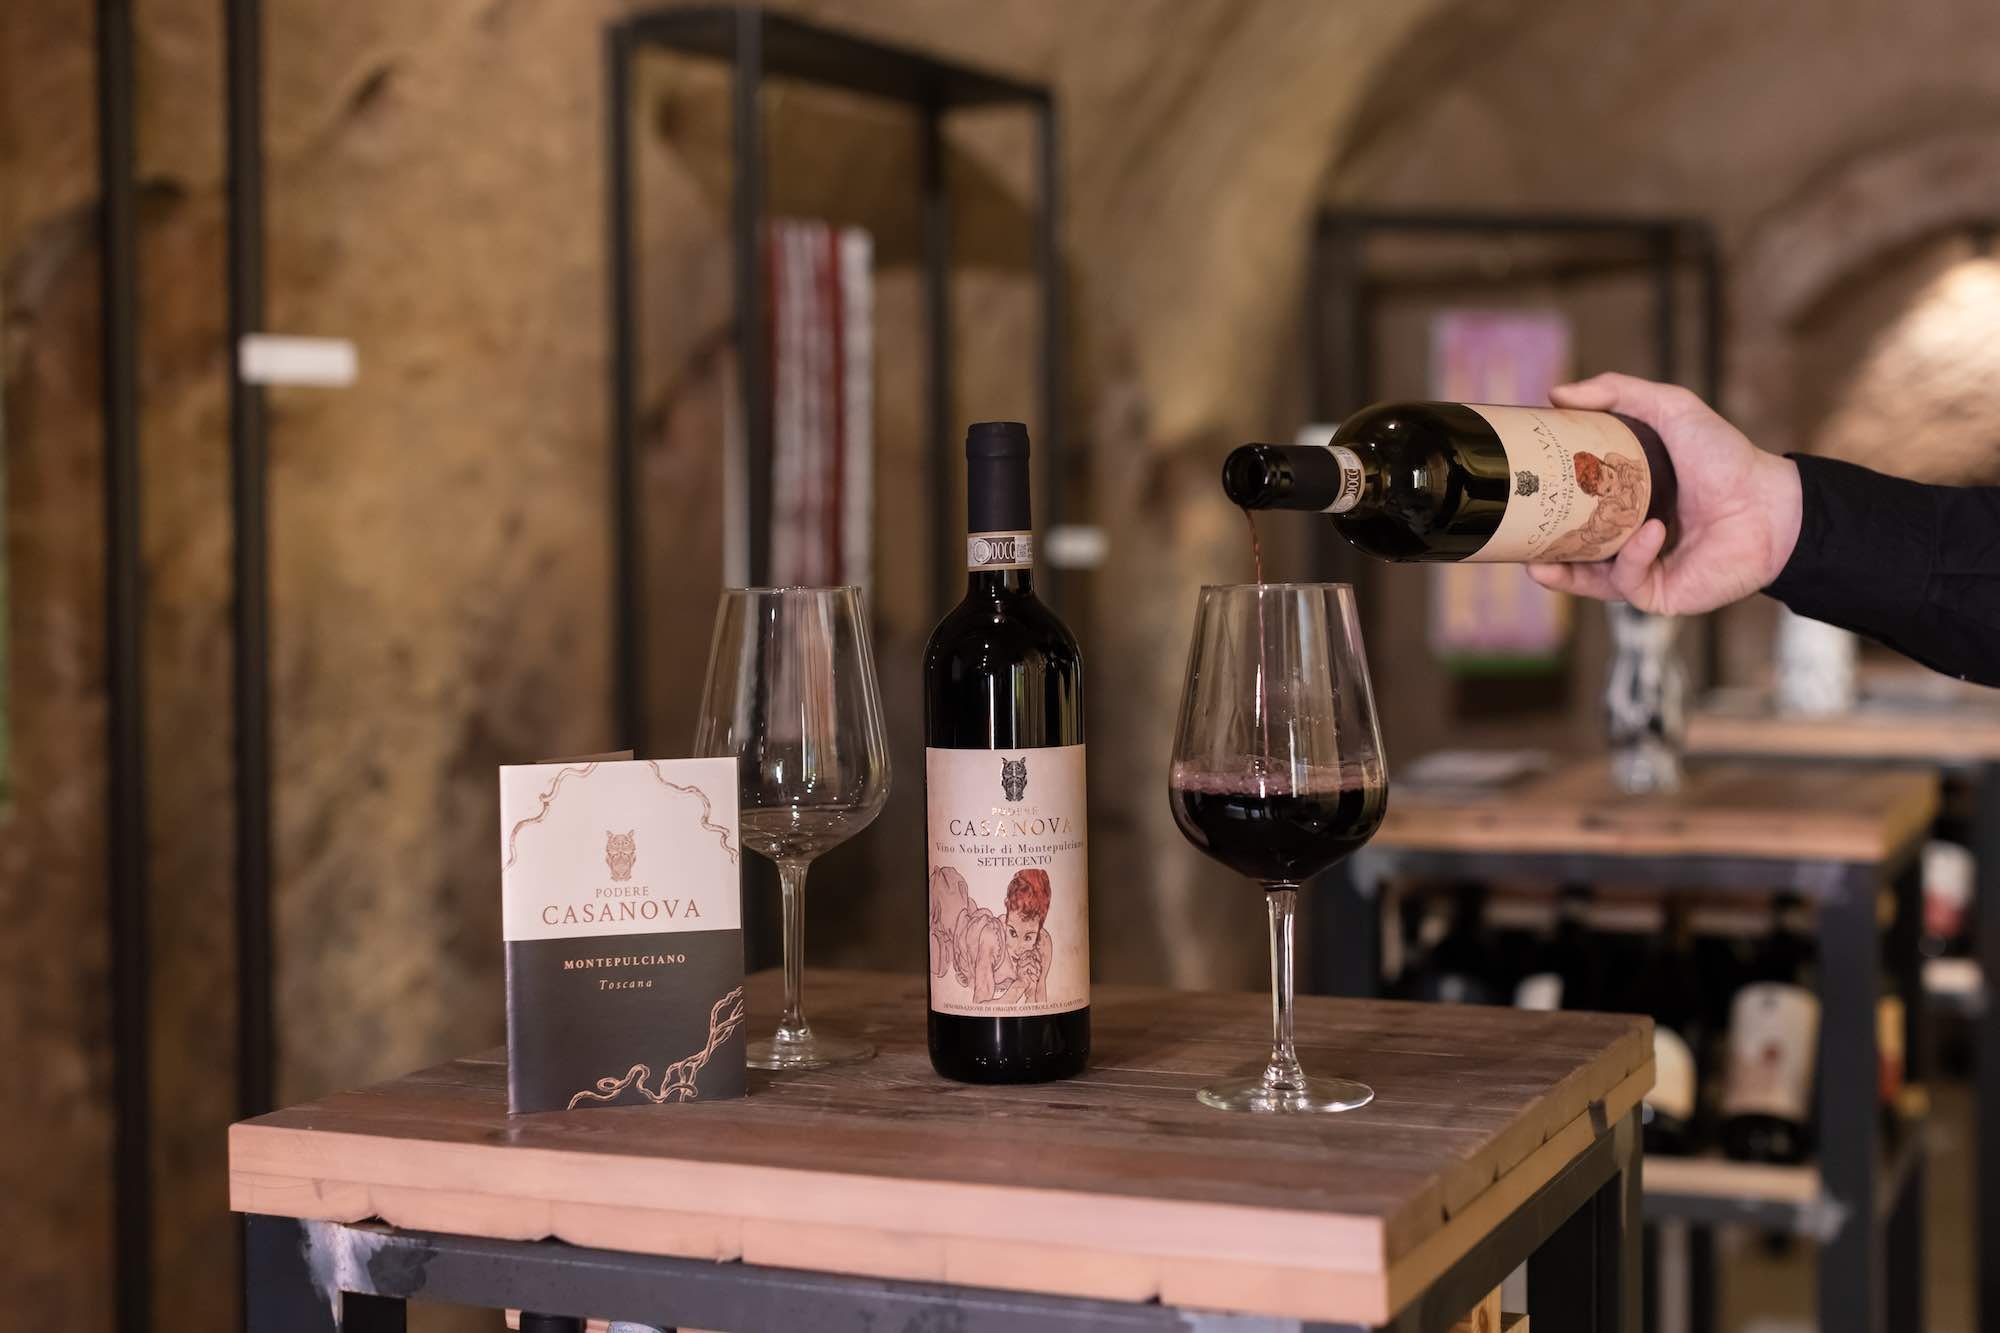 Bottiglia del vino "Settecento" del Podere Casanova, azienda vitivinicola a Montepulciano